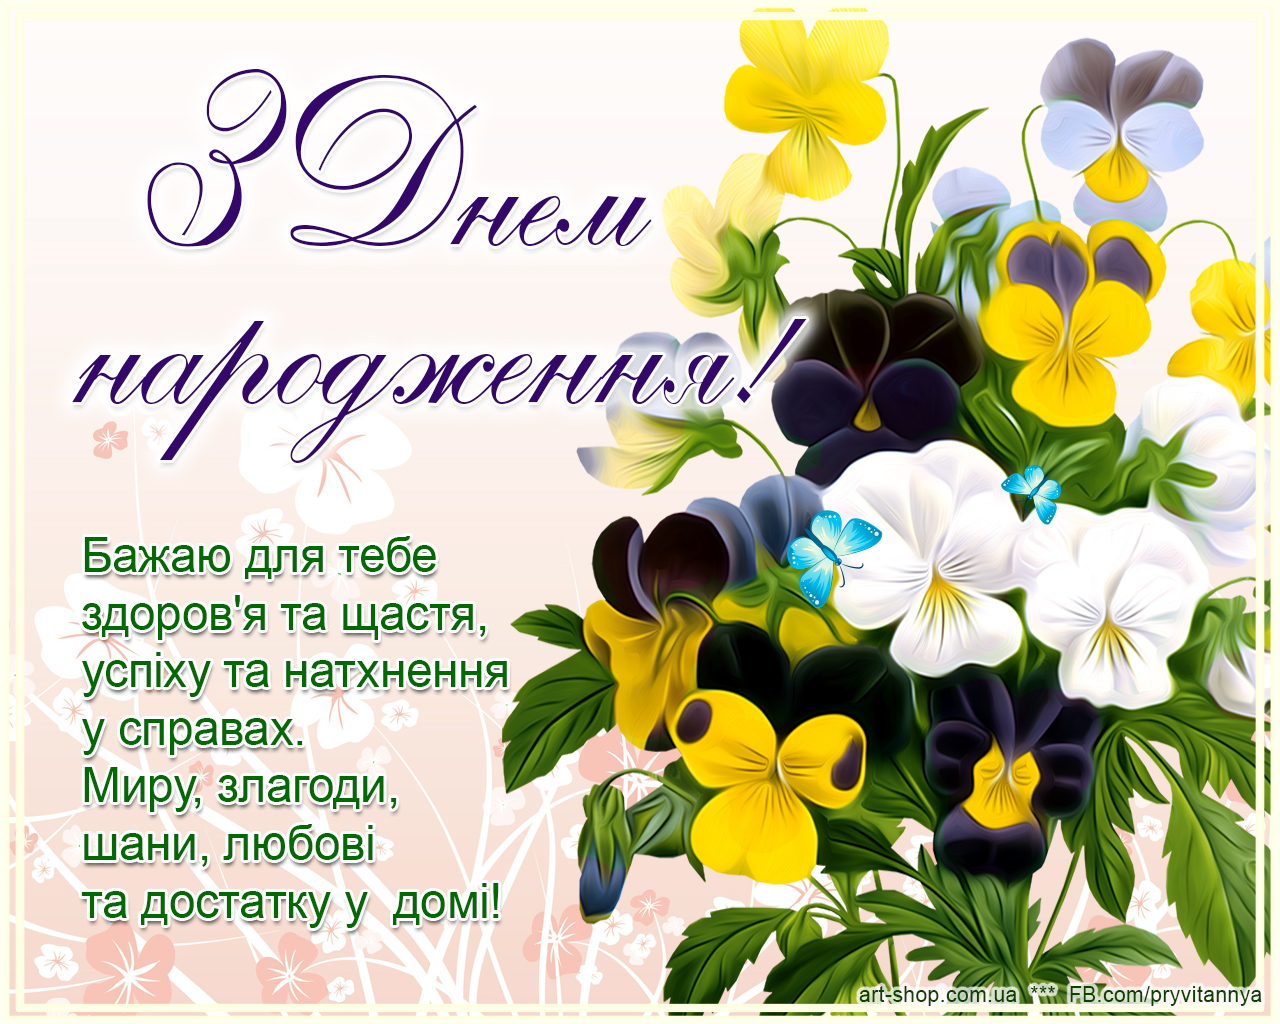 С днем рождения сестре на украинском. З днем народження. Привітання з днем народження. Поздравления с днём рождения на украинском языке. Листівки з днем народження.